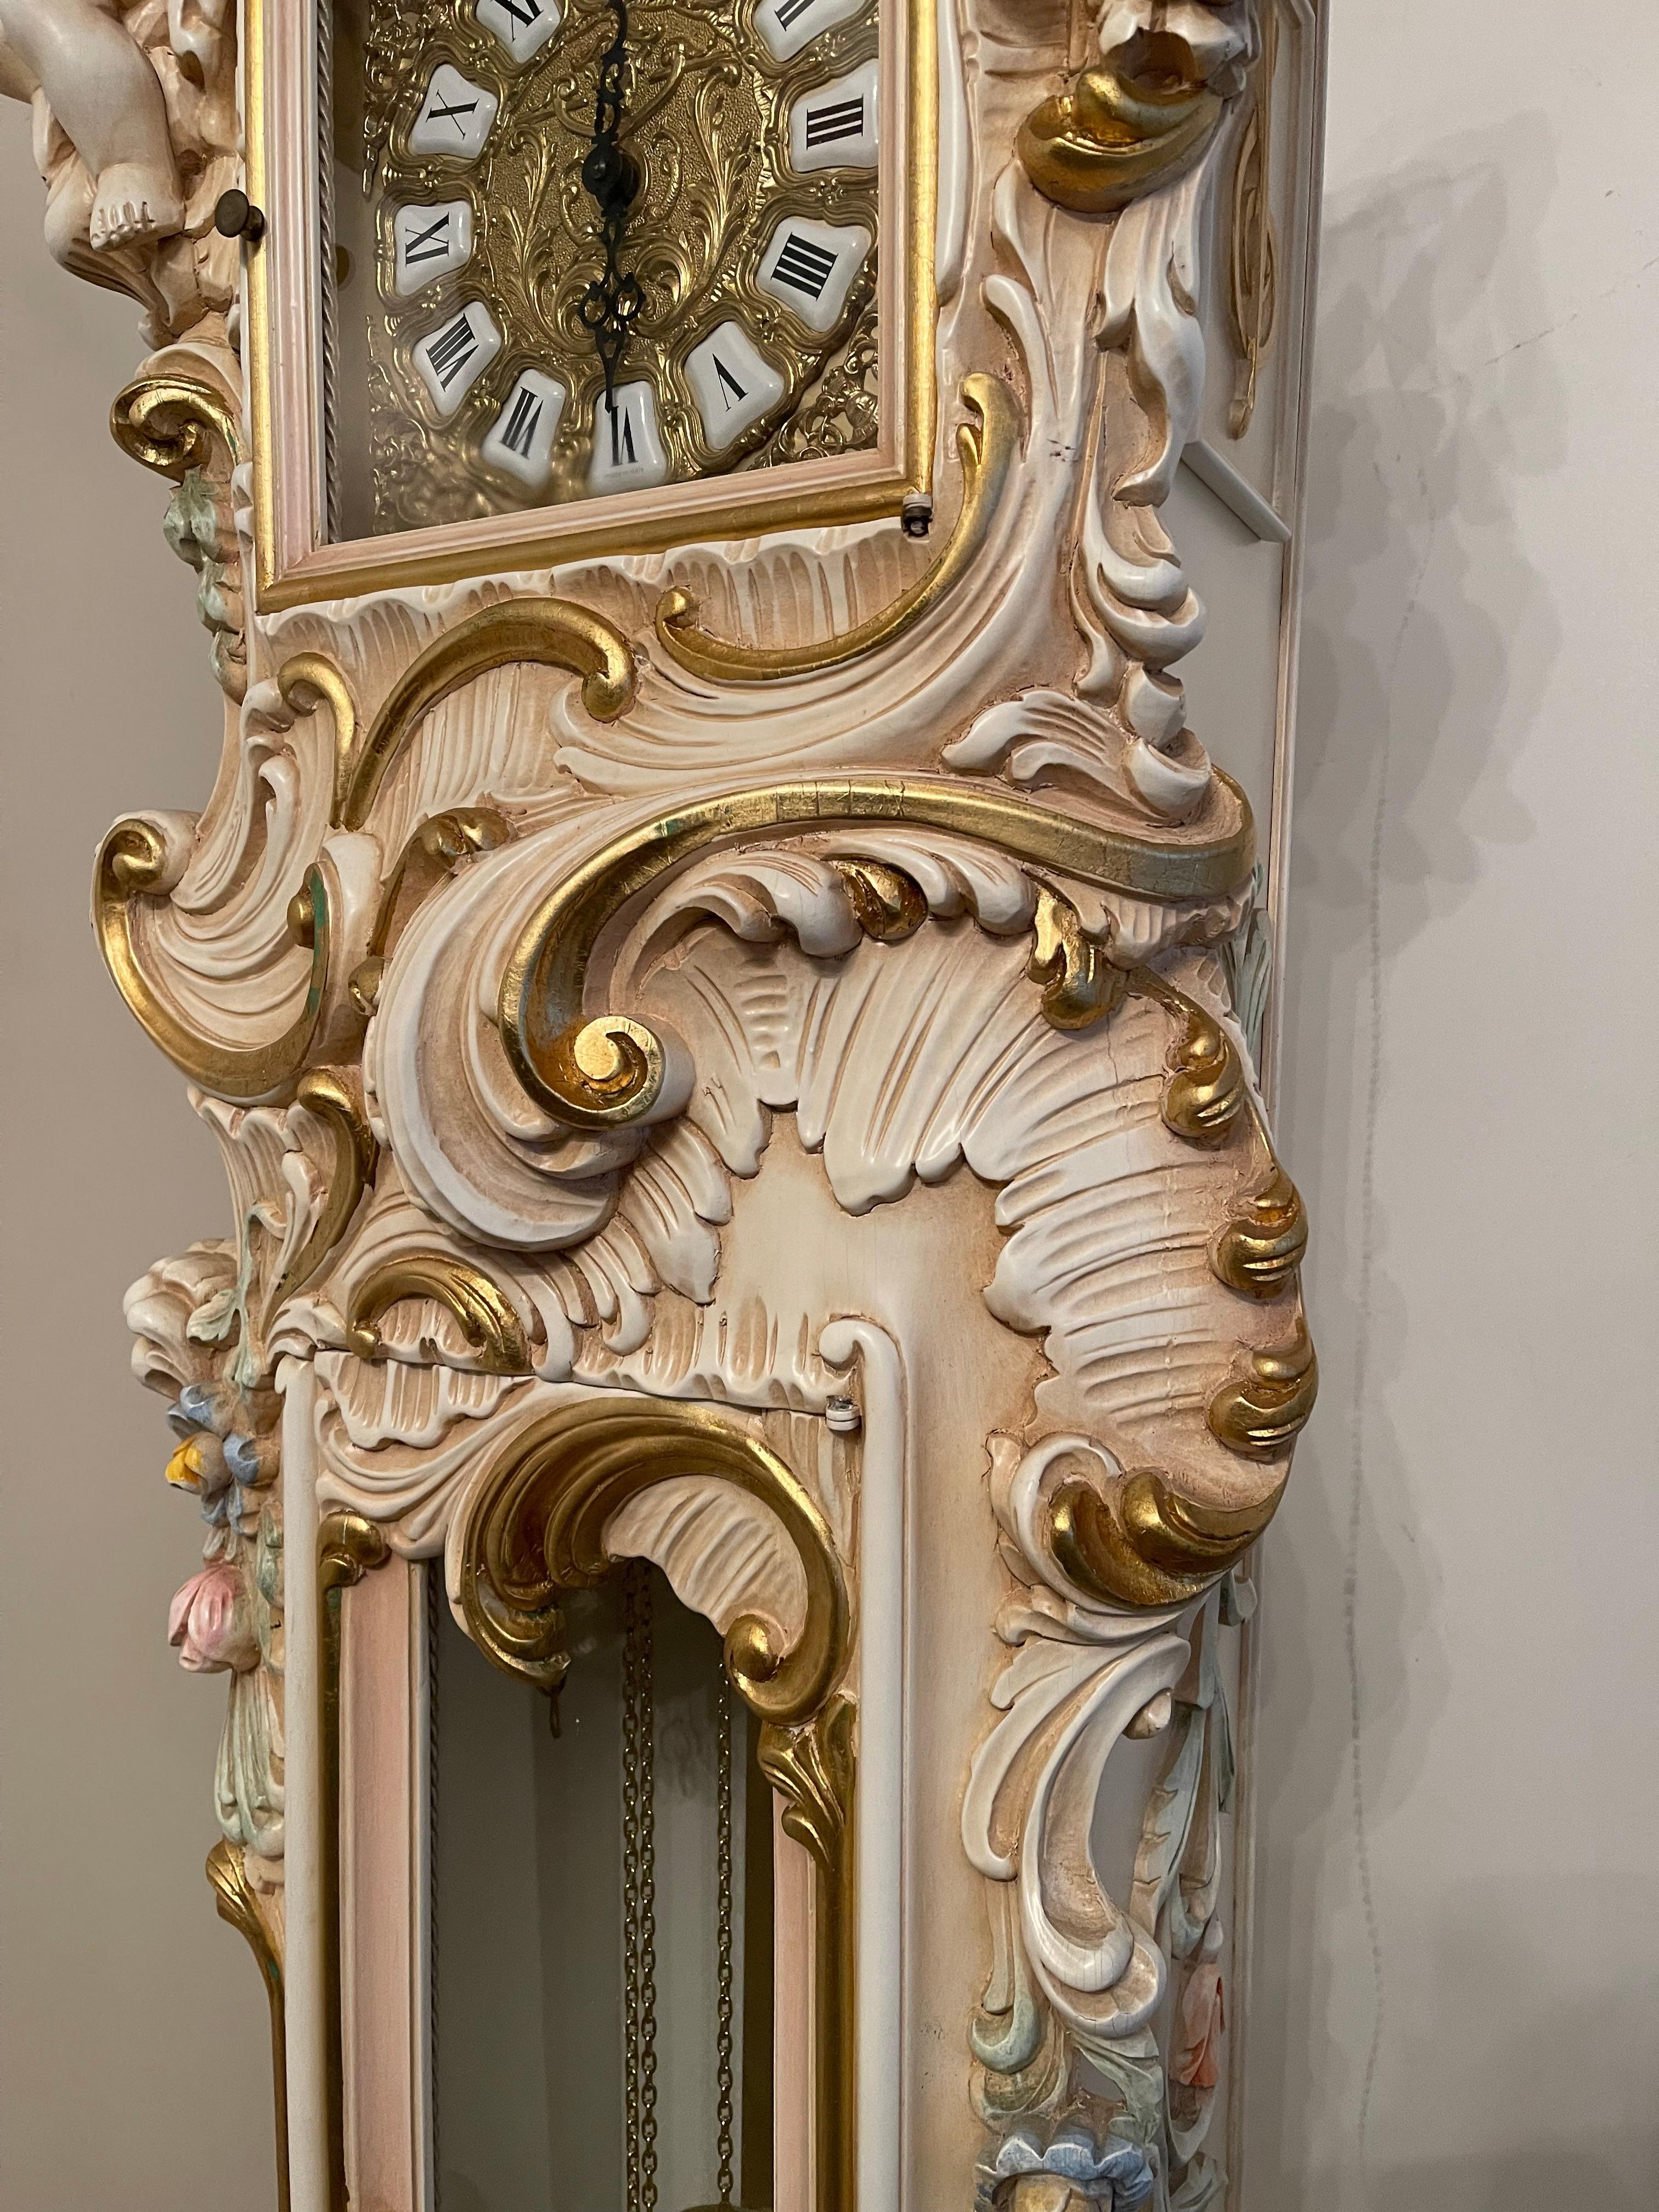  Orologio a Pendolo in Legno Laccato Style barocco veneziano 700 For Sale 1